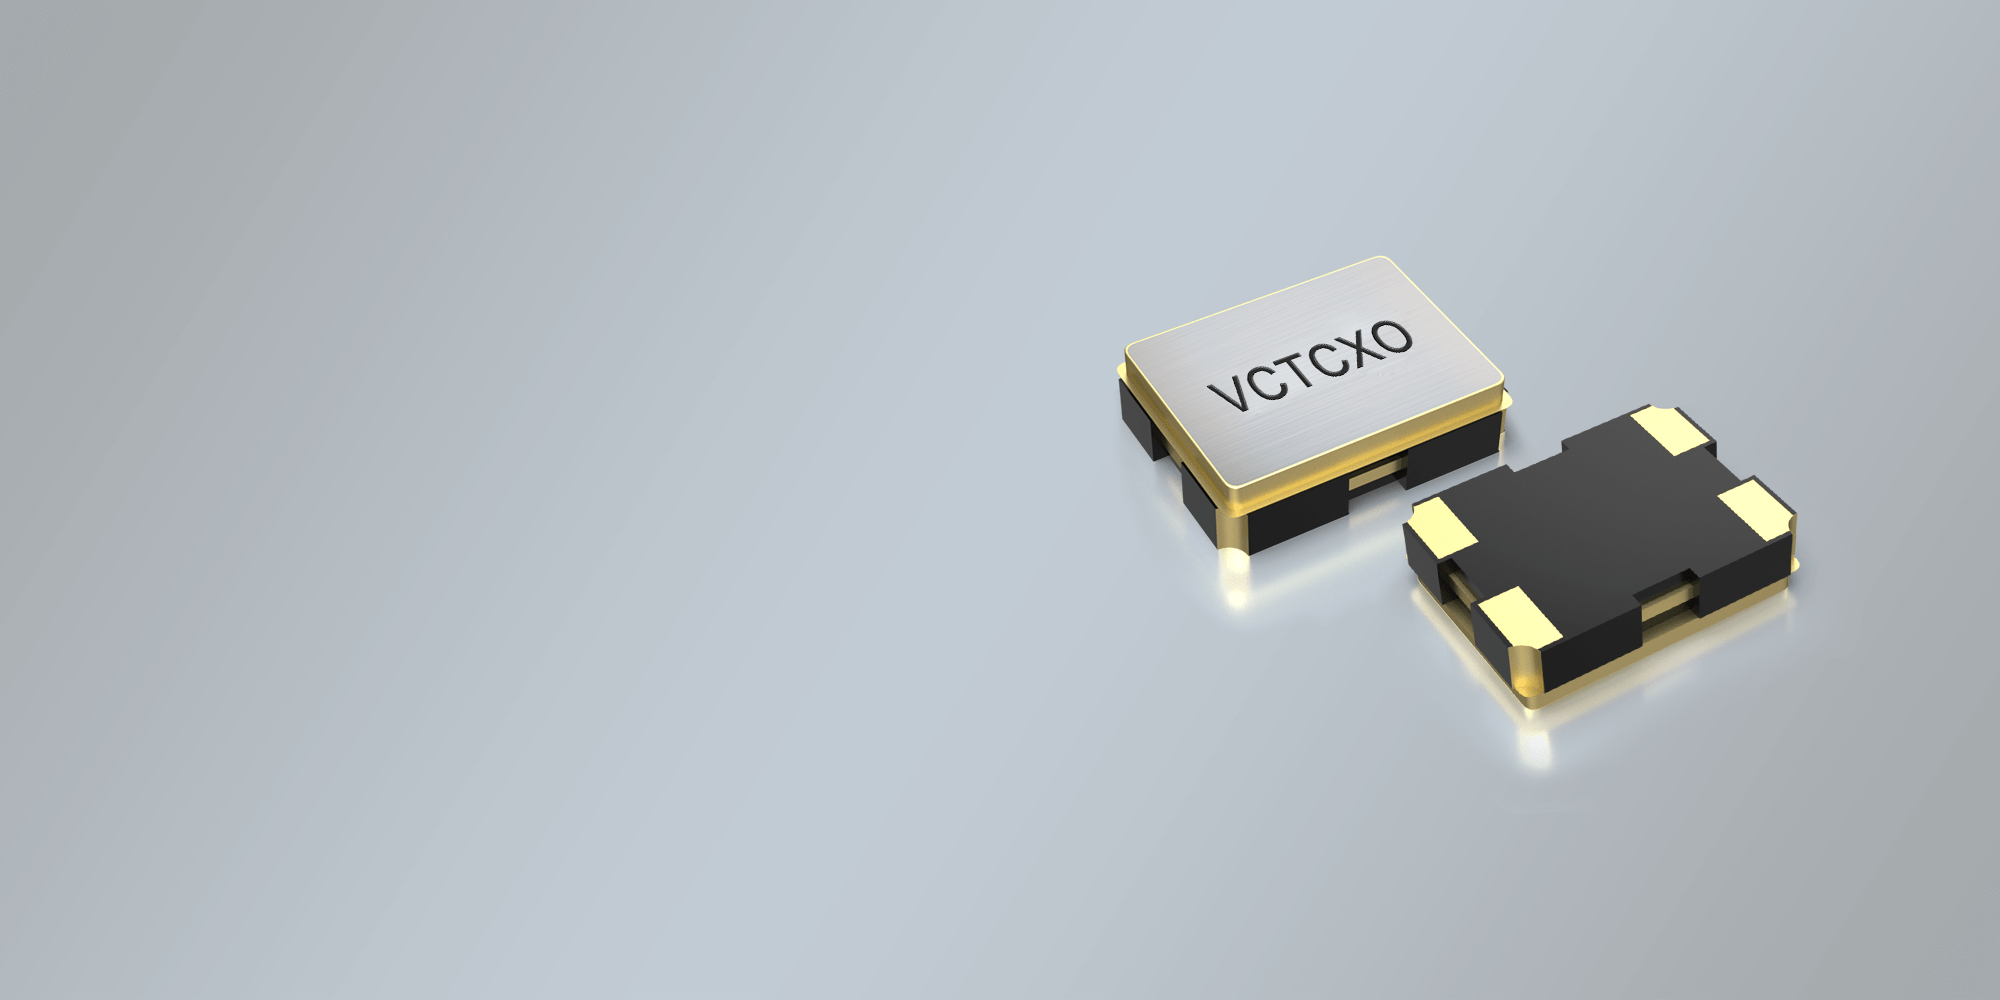 SMD VCTCXO OSZILLATOR 2,5 x 2,0 mm 9.6 - 52.0 MHz